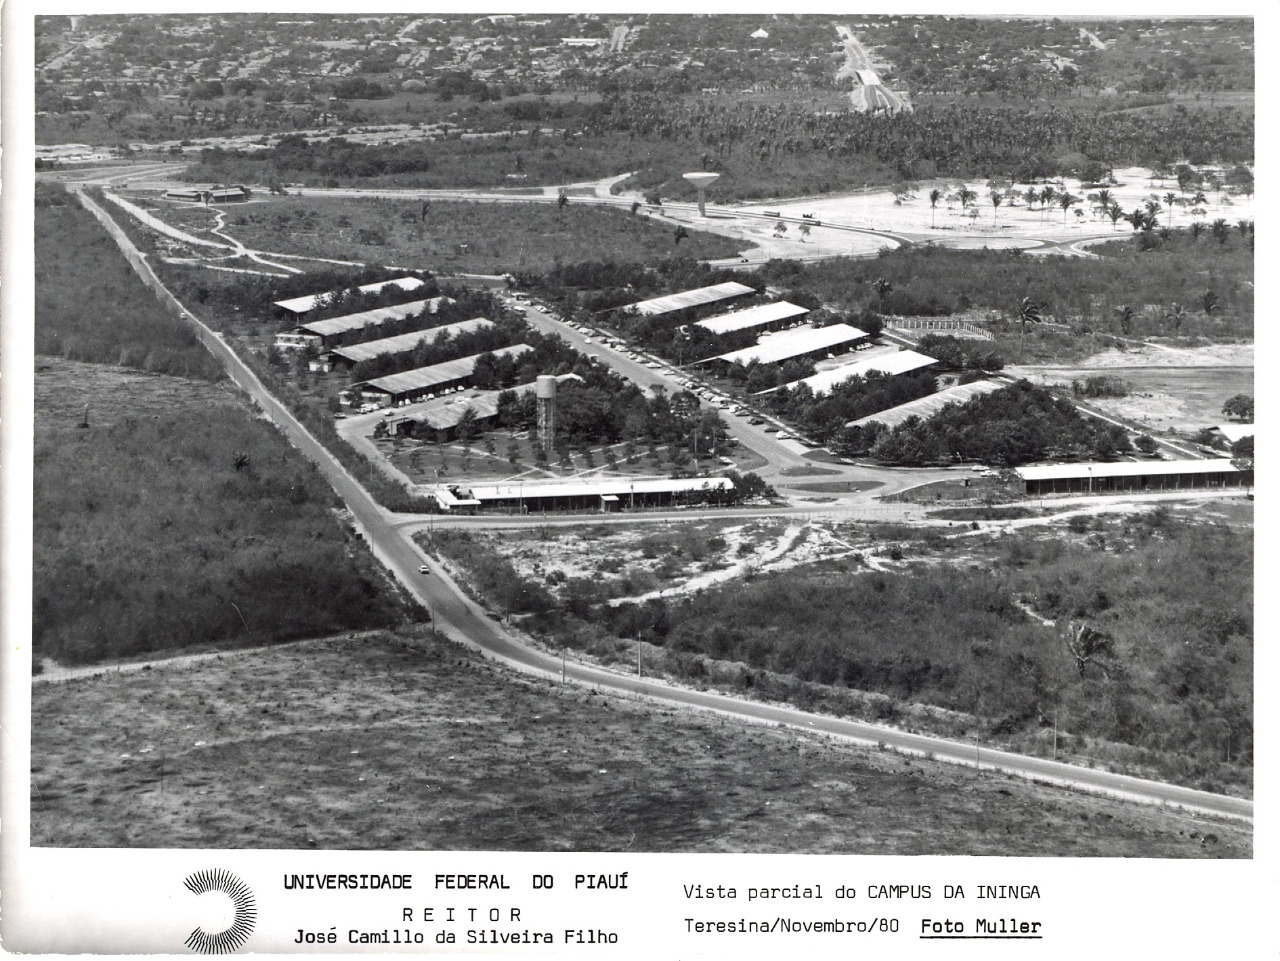 UFPI_-_imagem_do_campus_em_1980.jpeg